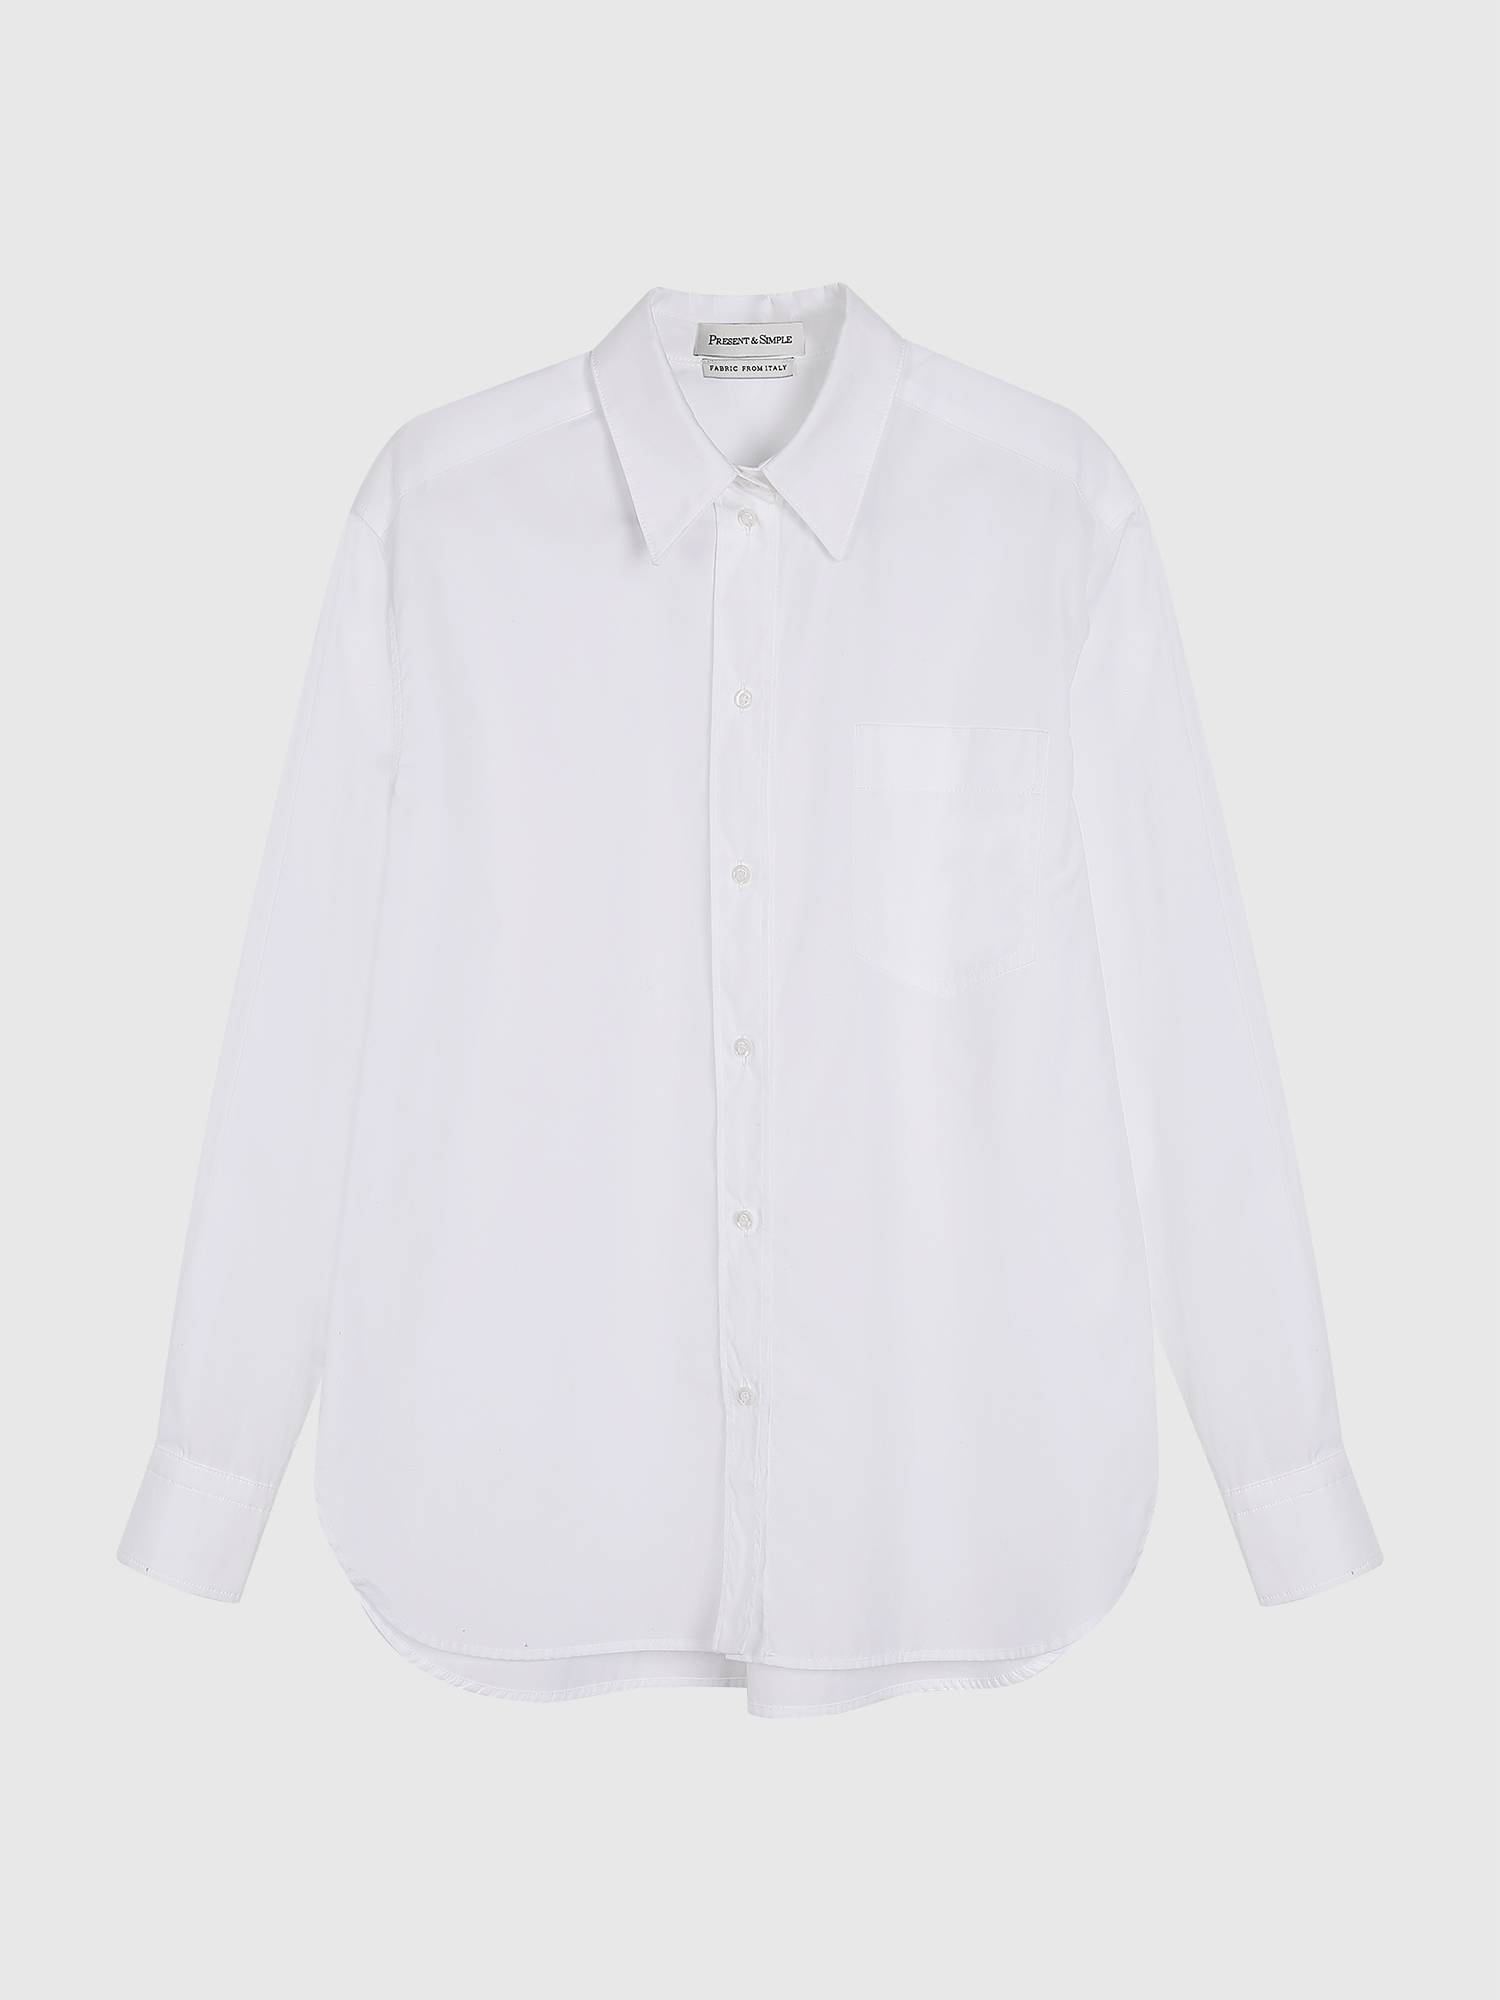 

Рубашка Boy's от Present & Simple, Белый